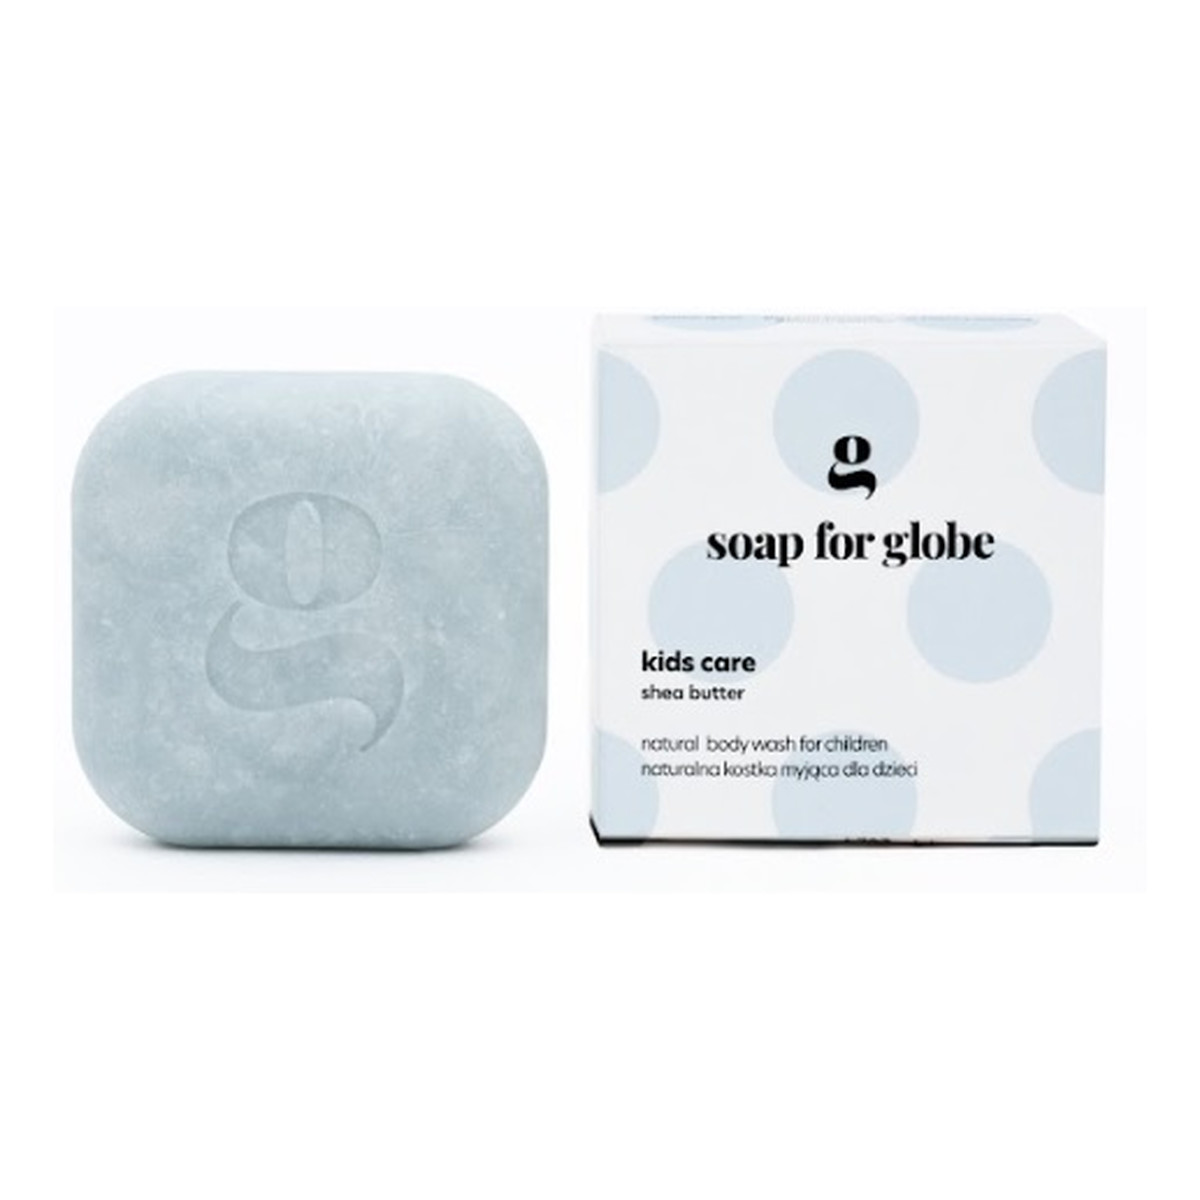 Soap for Globe Kostka myjąca dla dzieci kids care 100g 100g